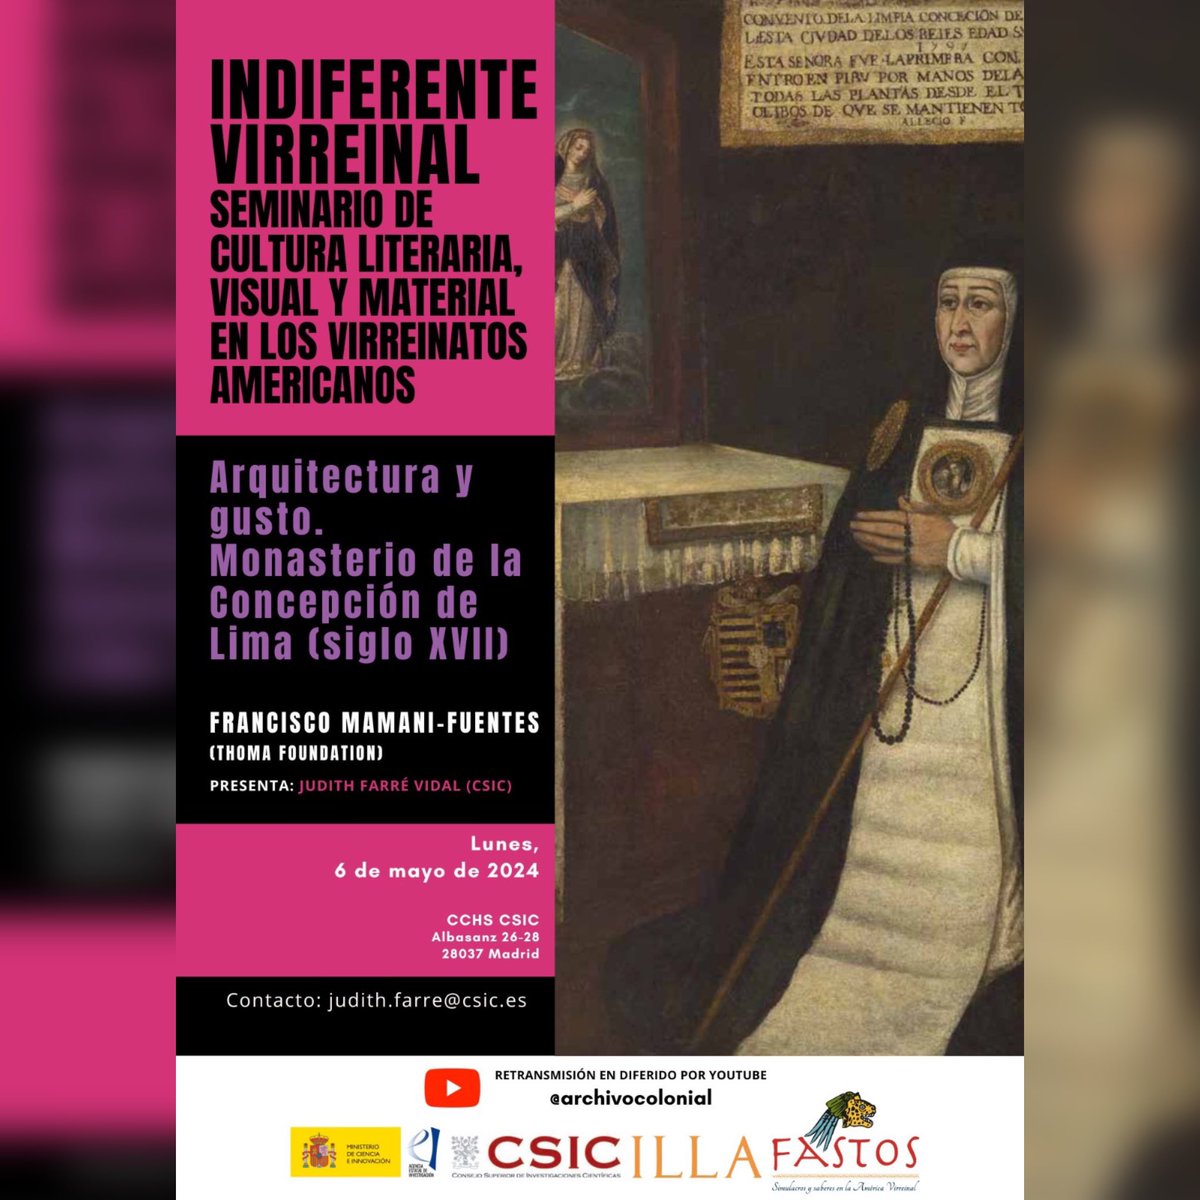 Ya está disponible en nuestra web el #indiferentevirreinal del mes de mayo, con Francisco Mamani-Fuentes y el convento de la Concepción de Lima 🙏